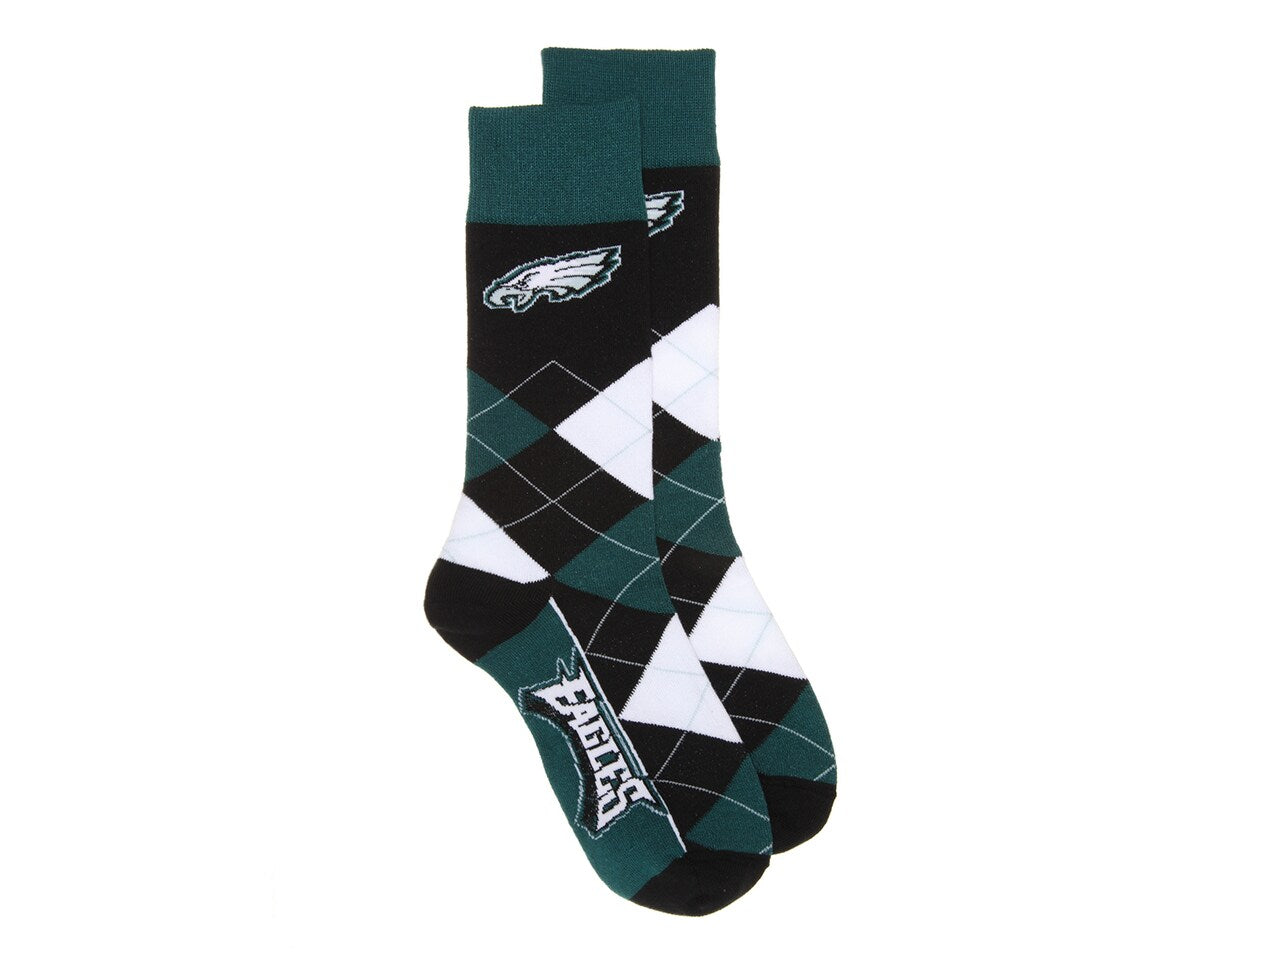 Copy of Philadelphia Eagles socks